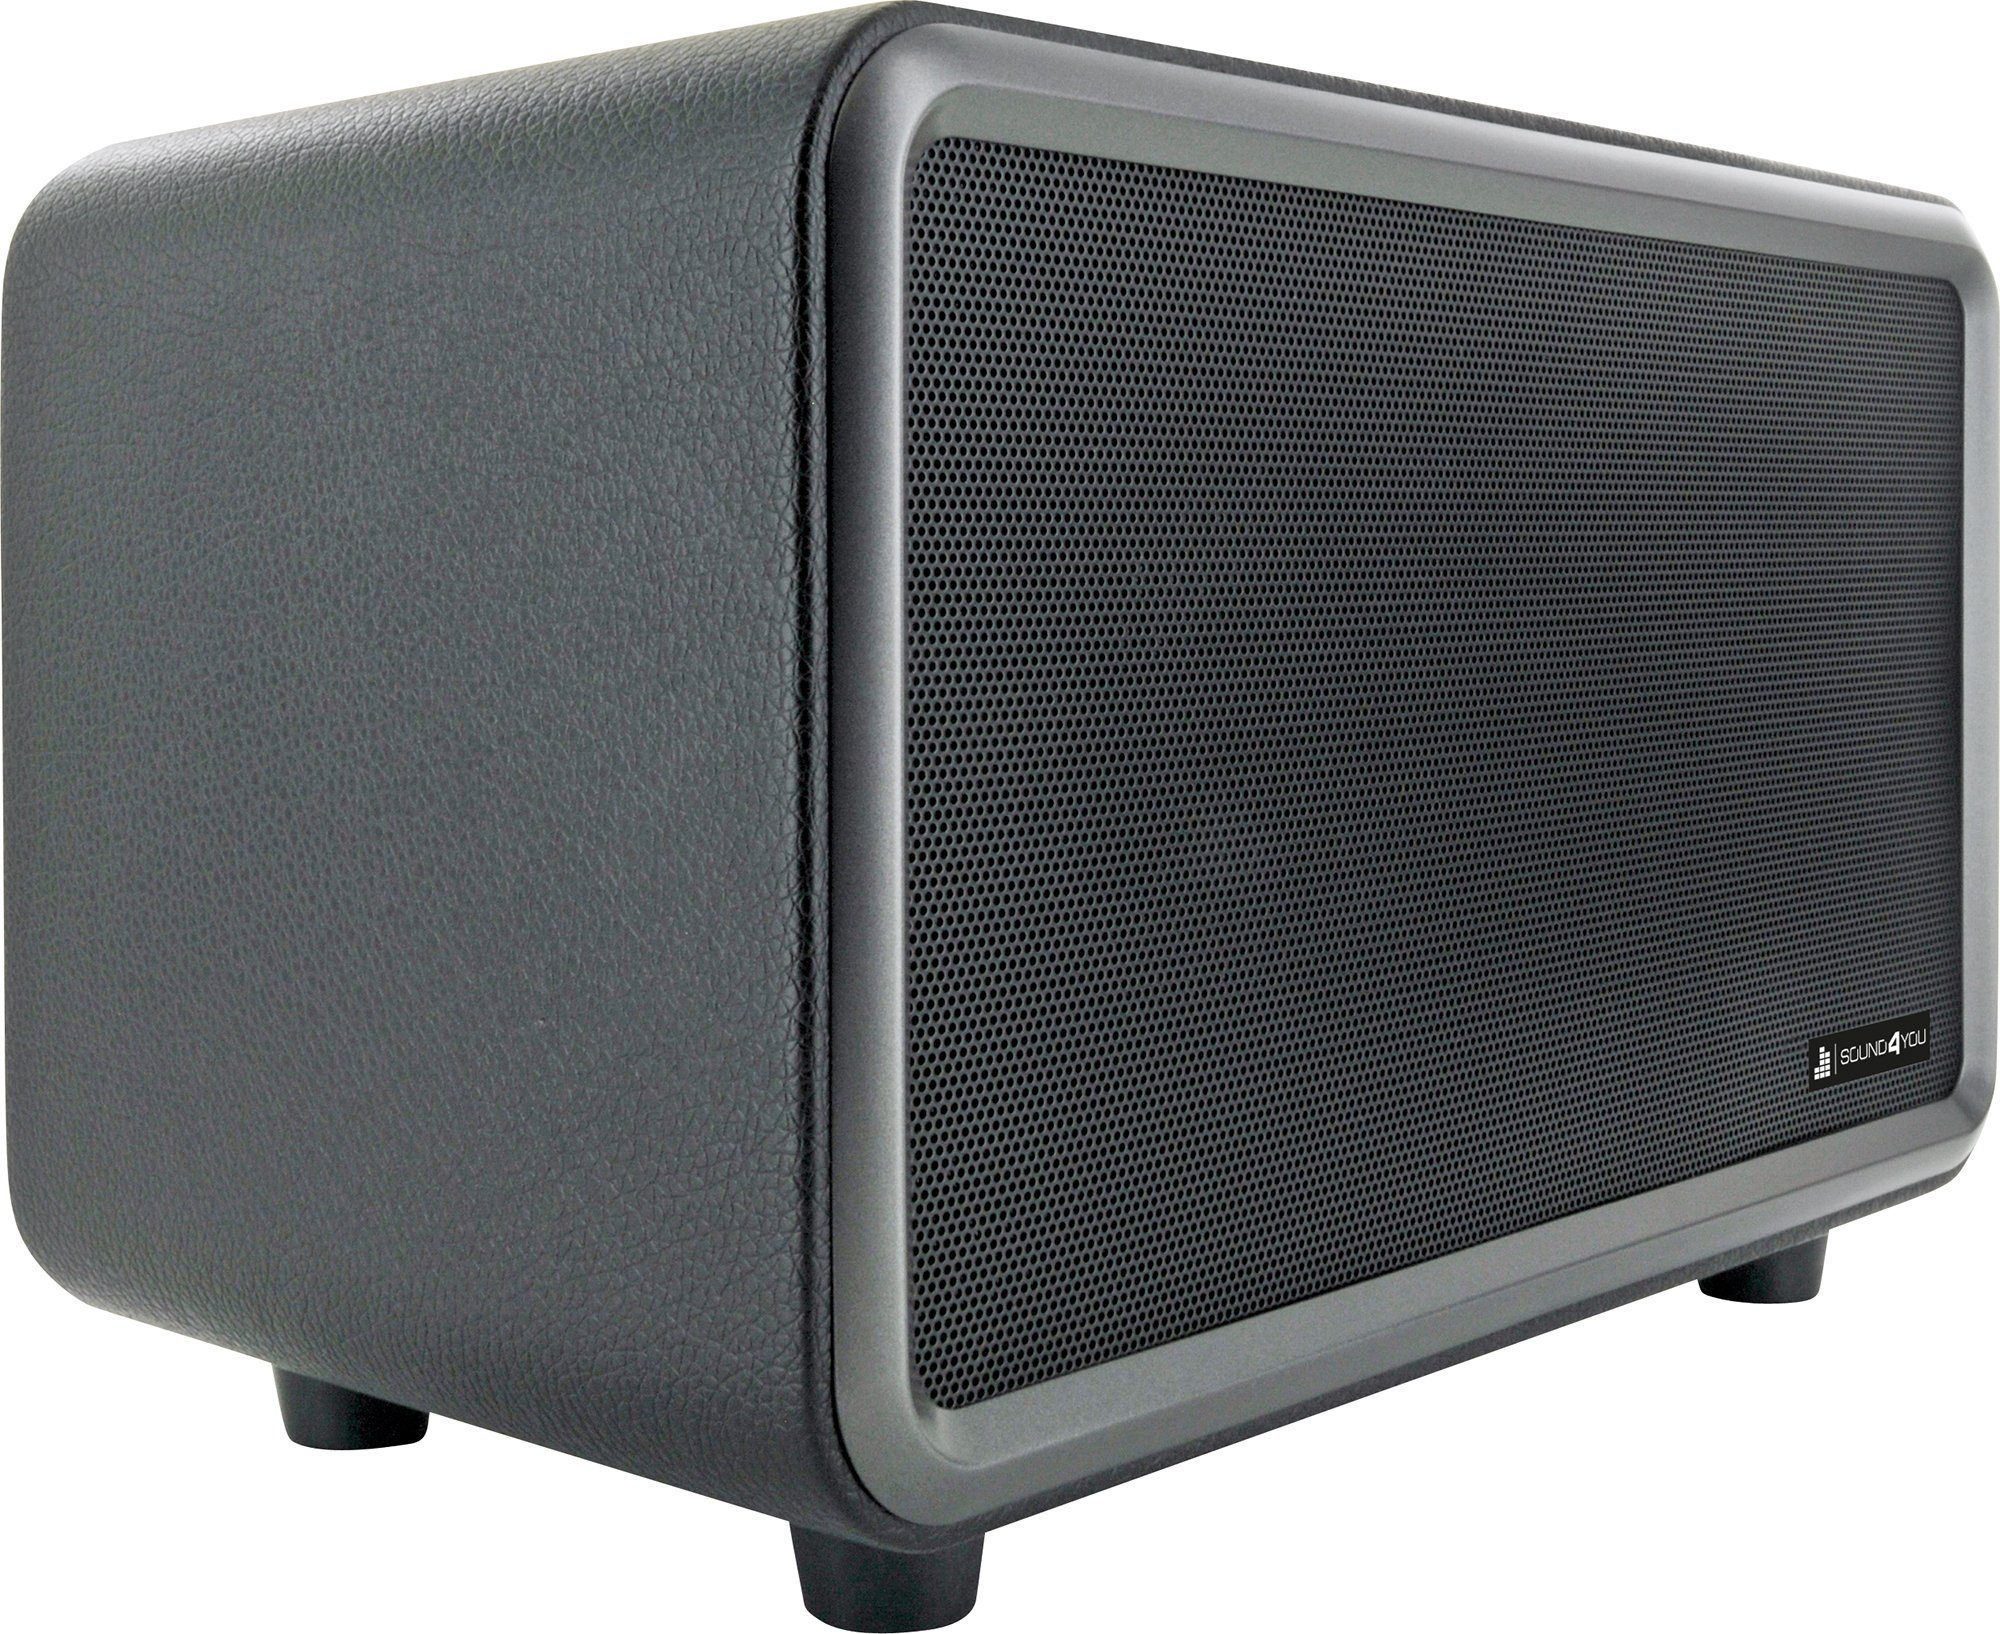 Schwaiger 661729 Bluetooth-Lautsprecher (Klinkenanschluss, Bluetooth, 24 W, Retro Design) schwarz